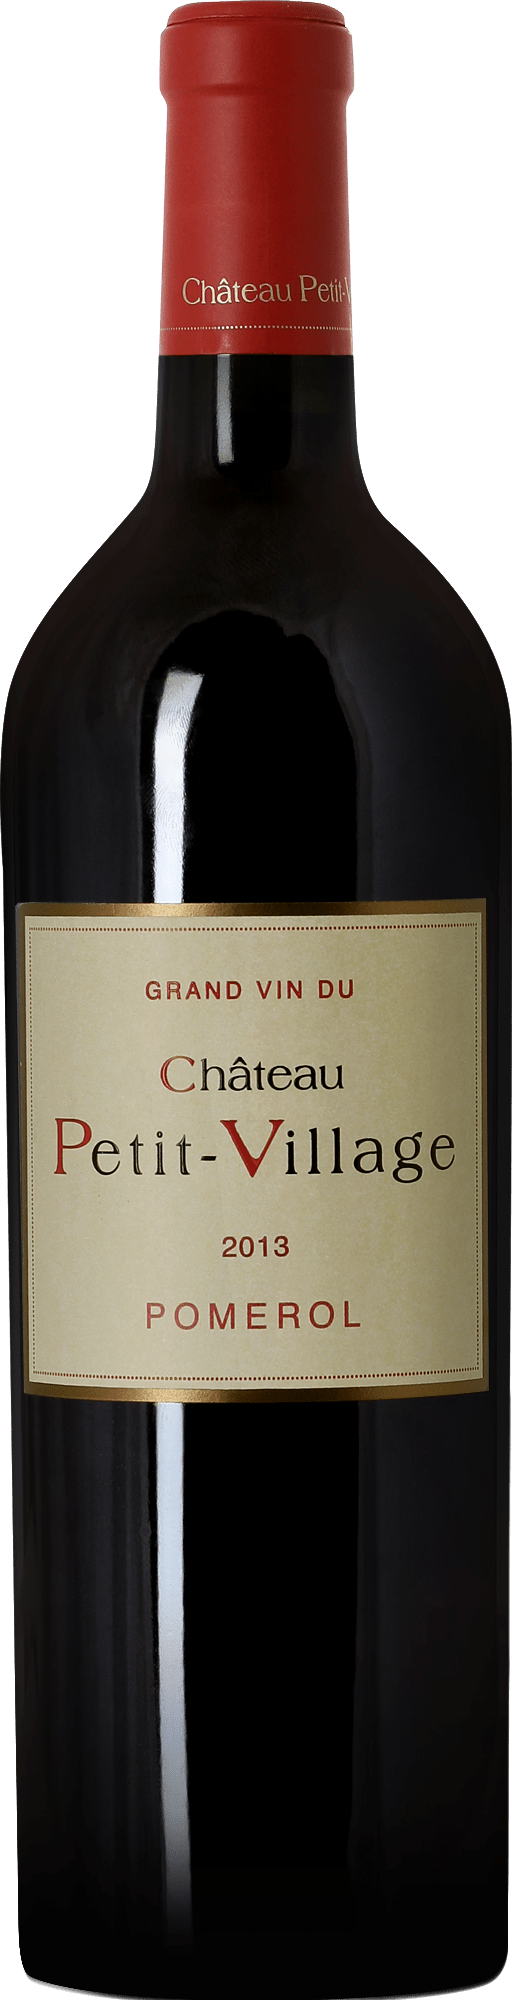 Chateau Petit-Village, 2013